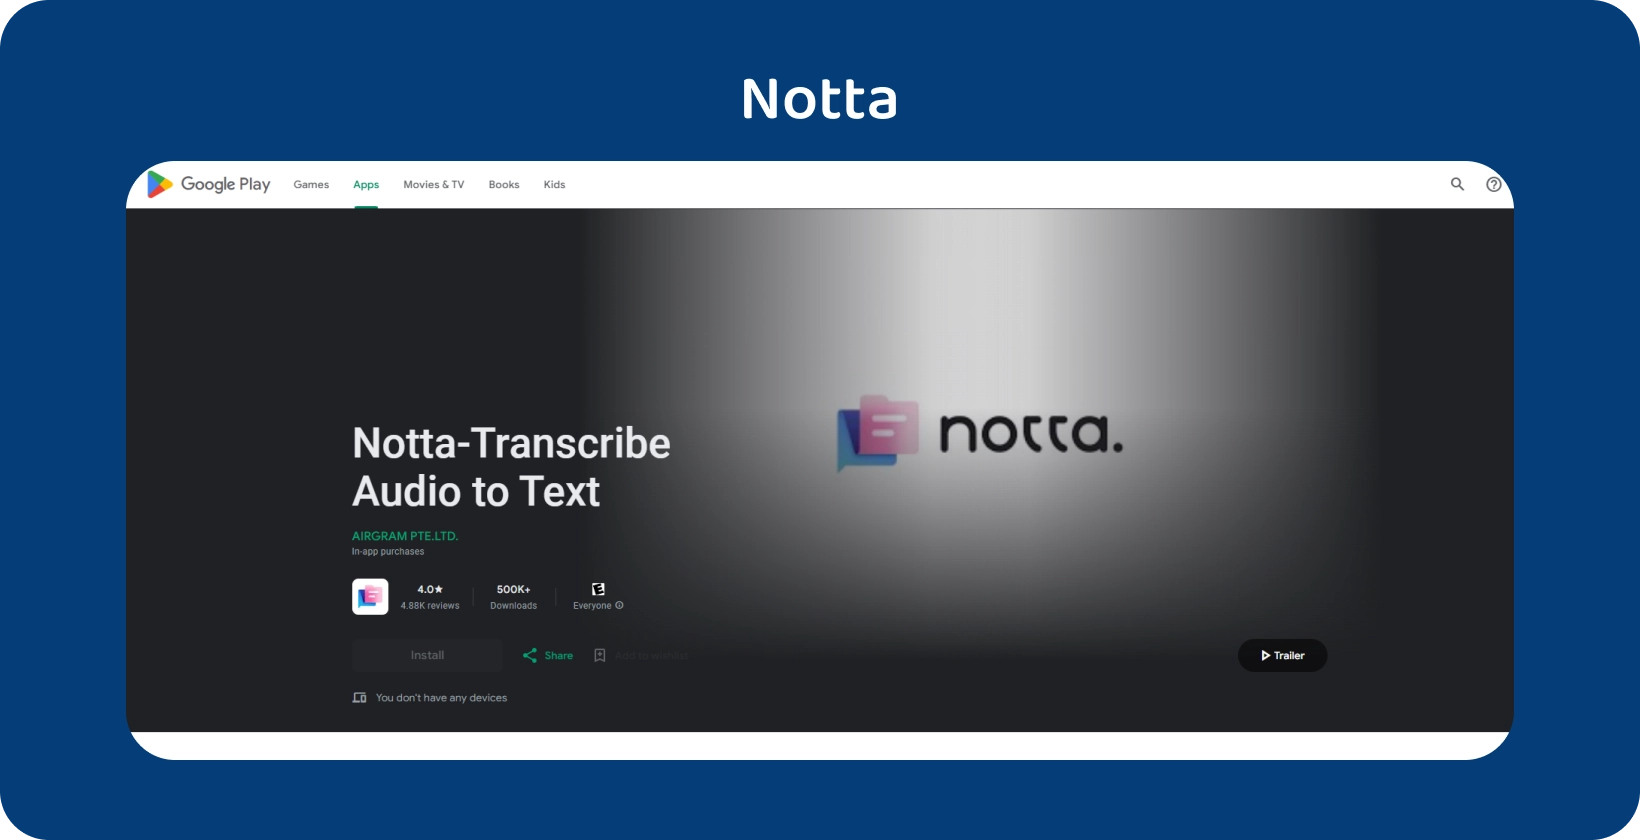 แอป Notta.ai บน Google Play ซึ่งแสดงความสามารถในการถอดเสียงเป็นข้อความอย่างถูกต้องบน Android